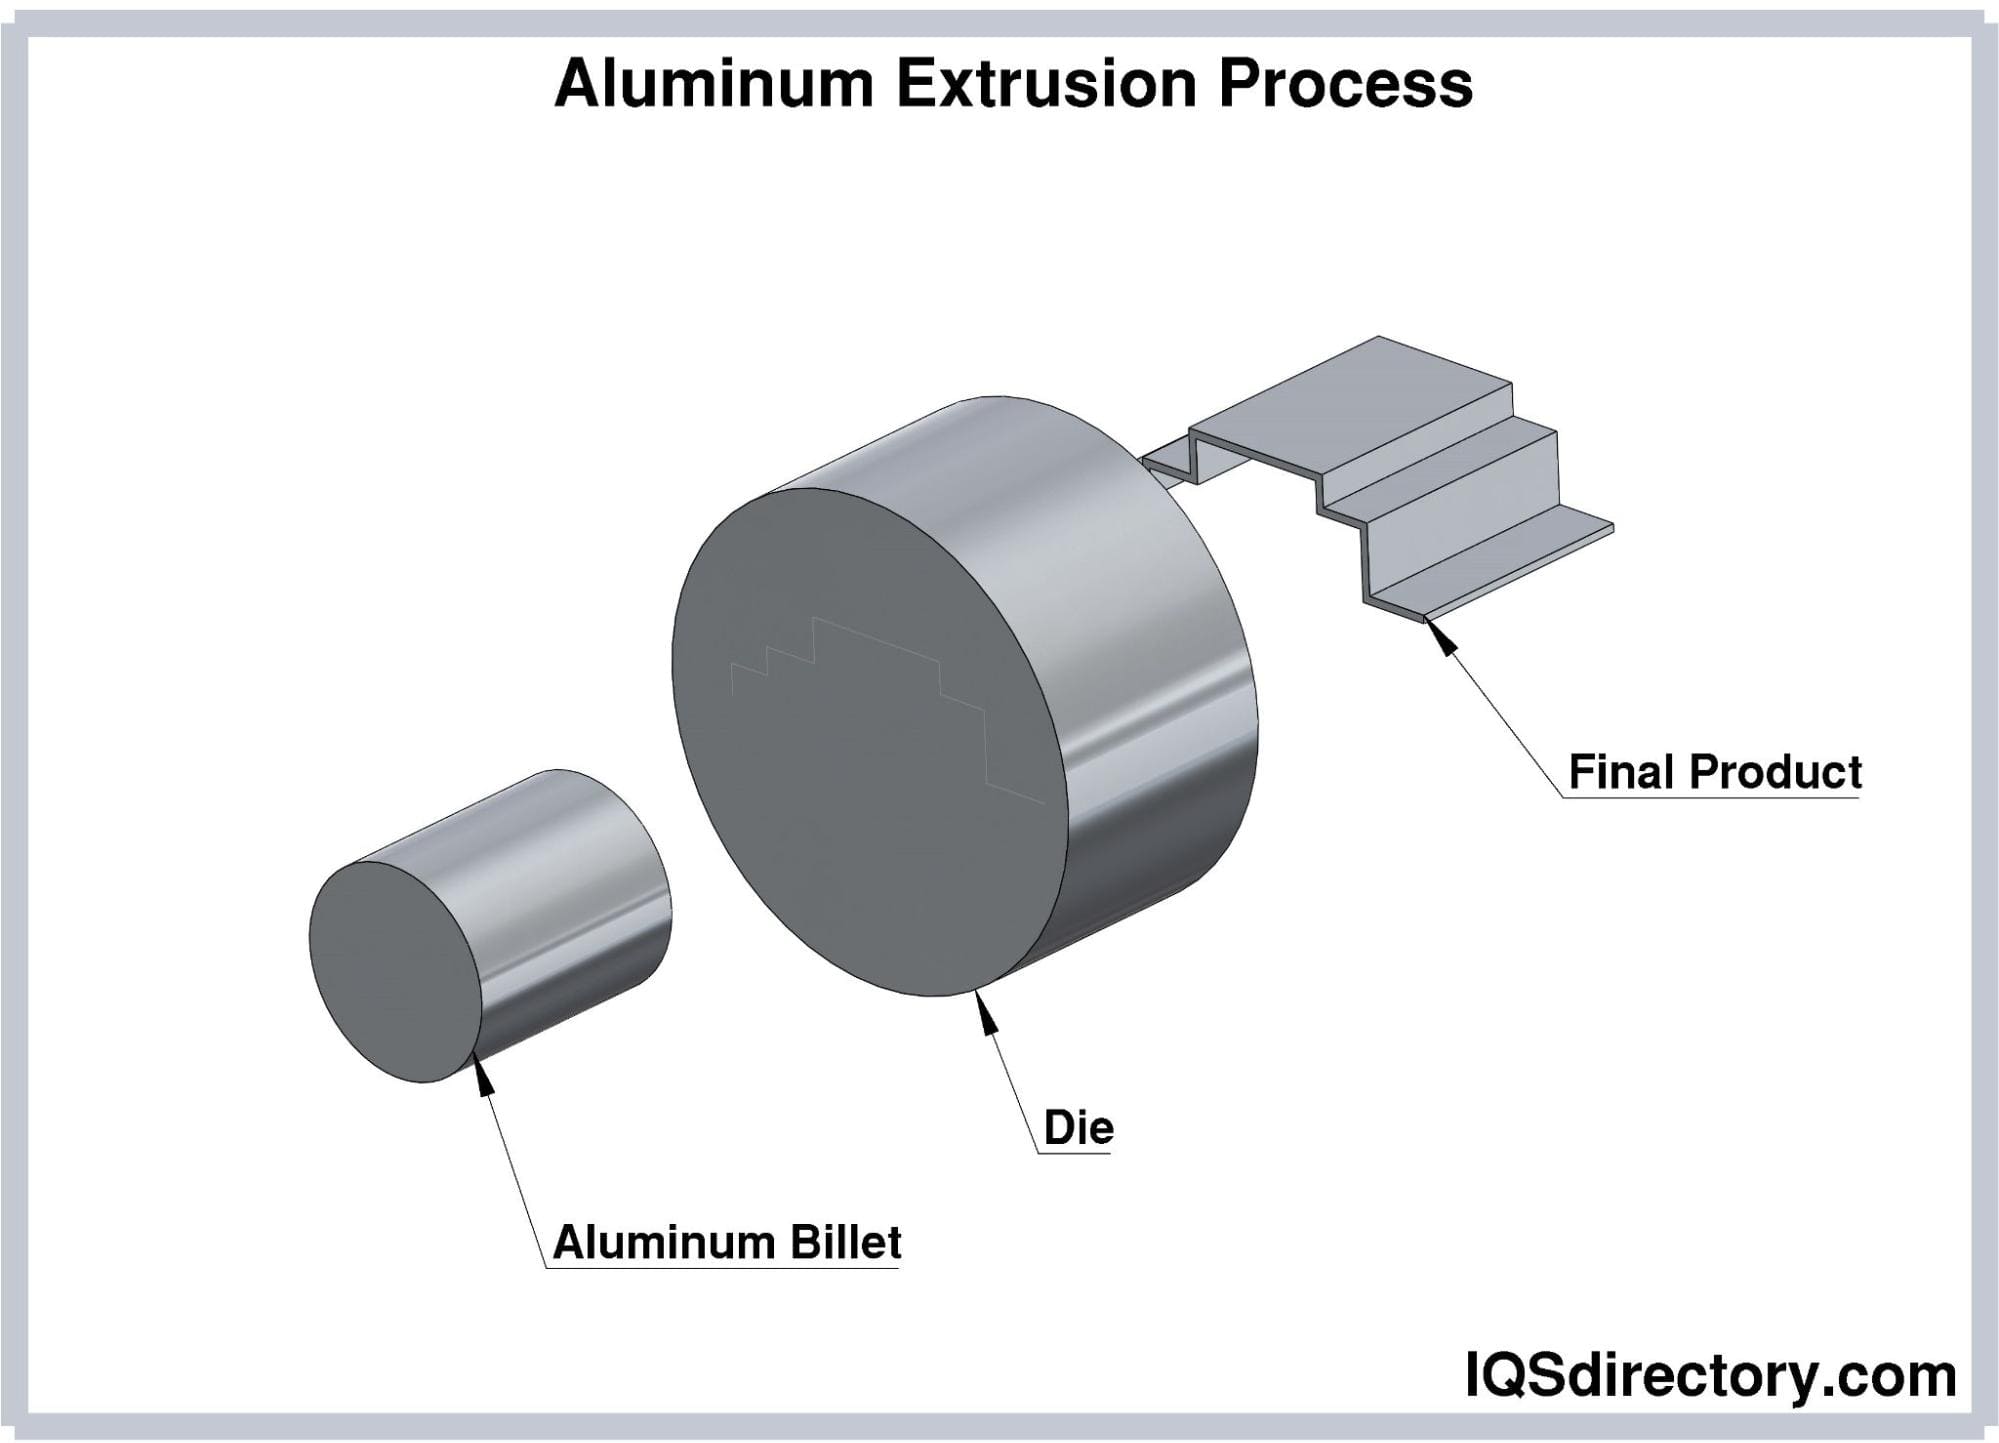 Aluminum Extrusion Process